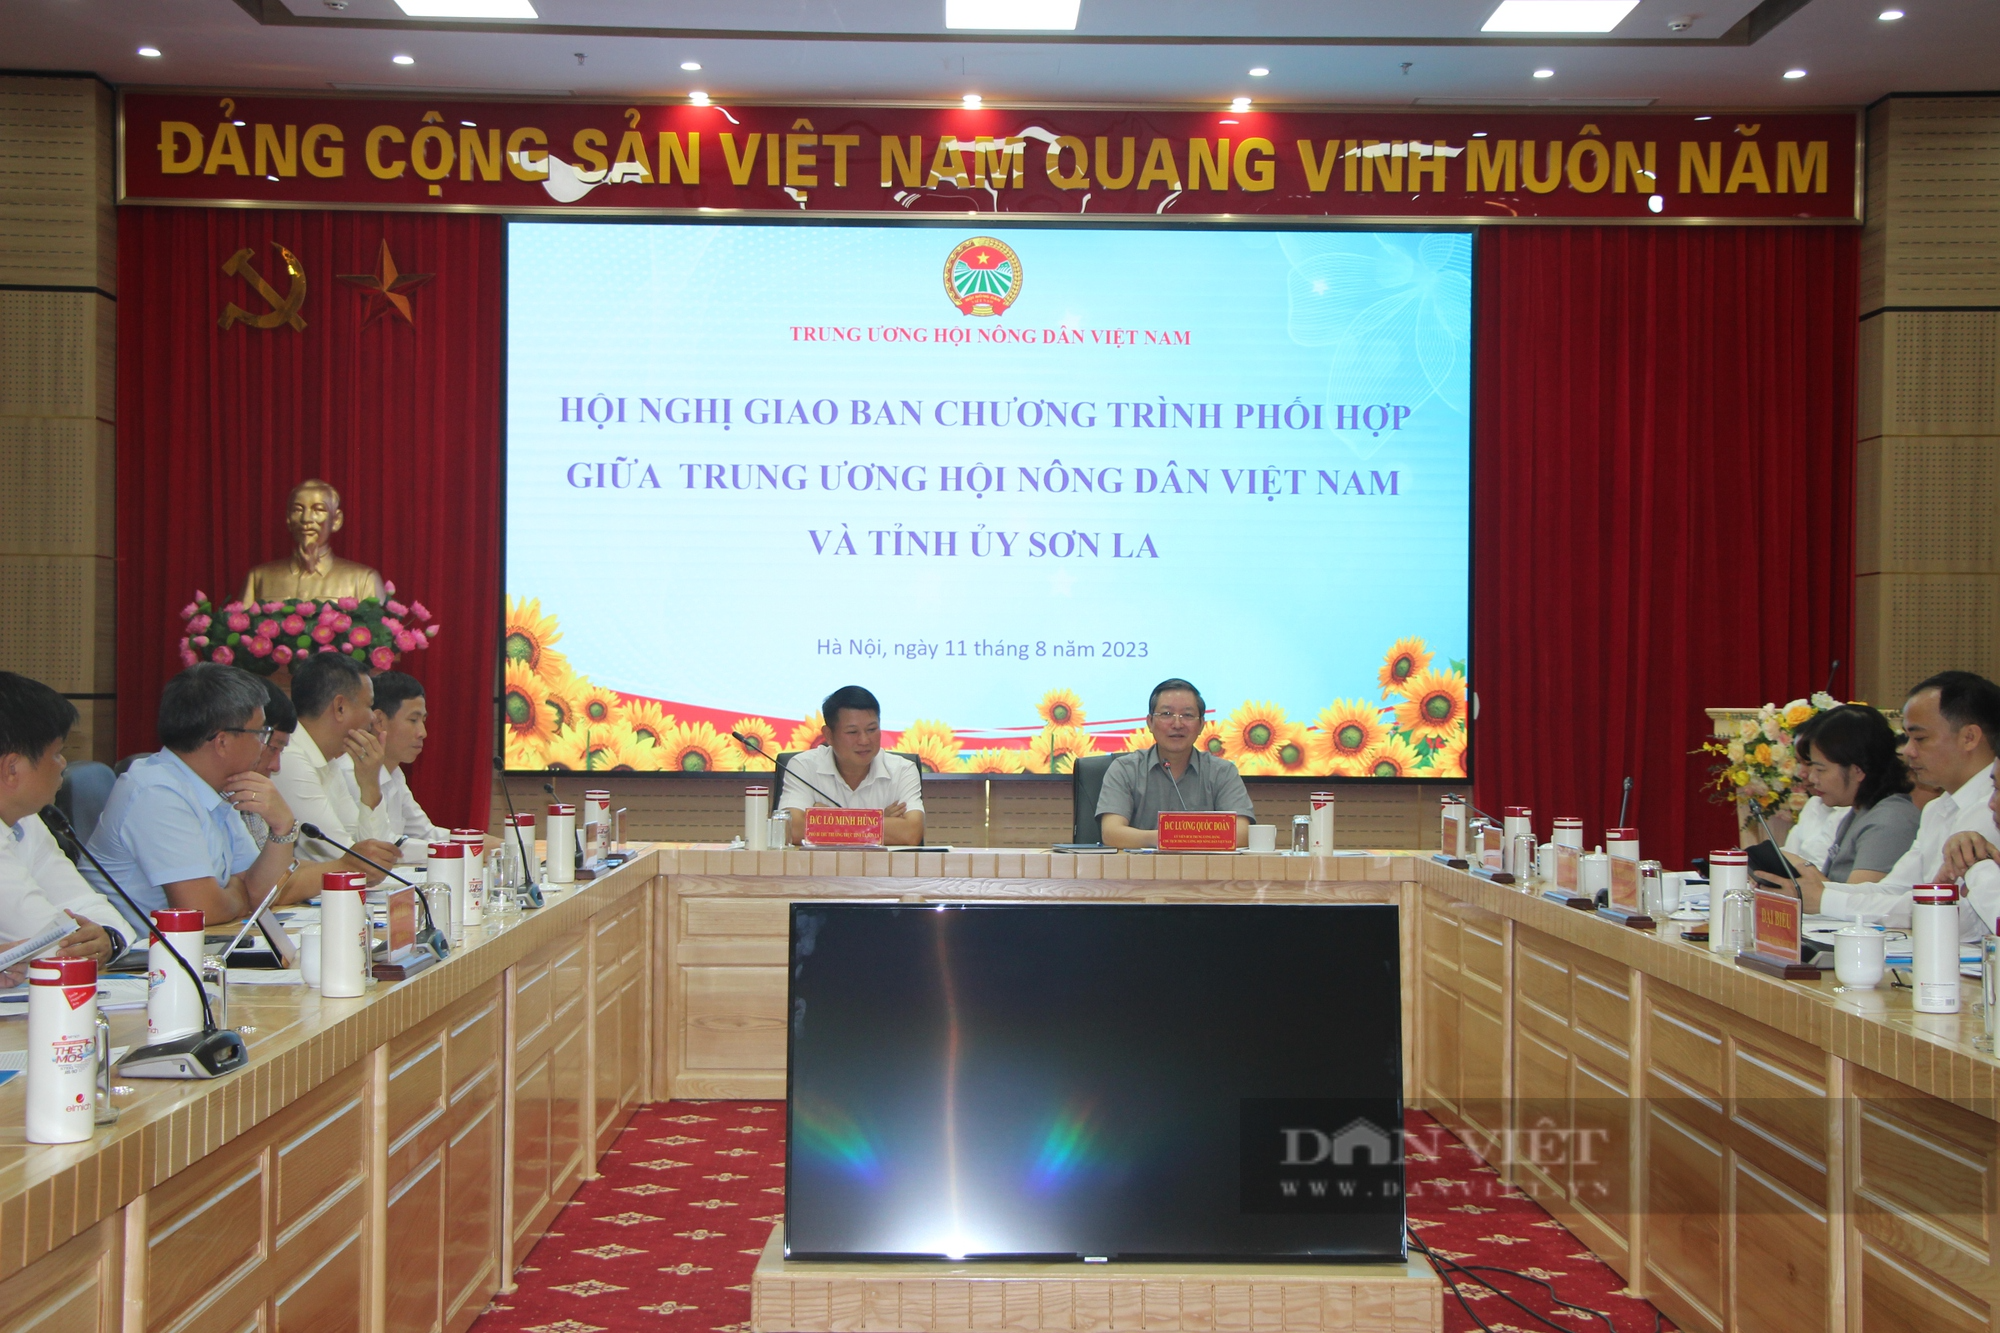 Trung ương Hội Nông dân Việt Nam và Tỉnh ủy Sơn La giao ban Chương trình phối hợp 7 tháng năm 2023 - Ảnh 1.